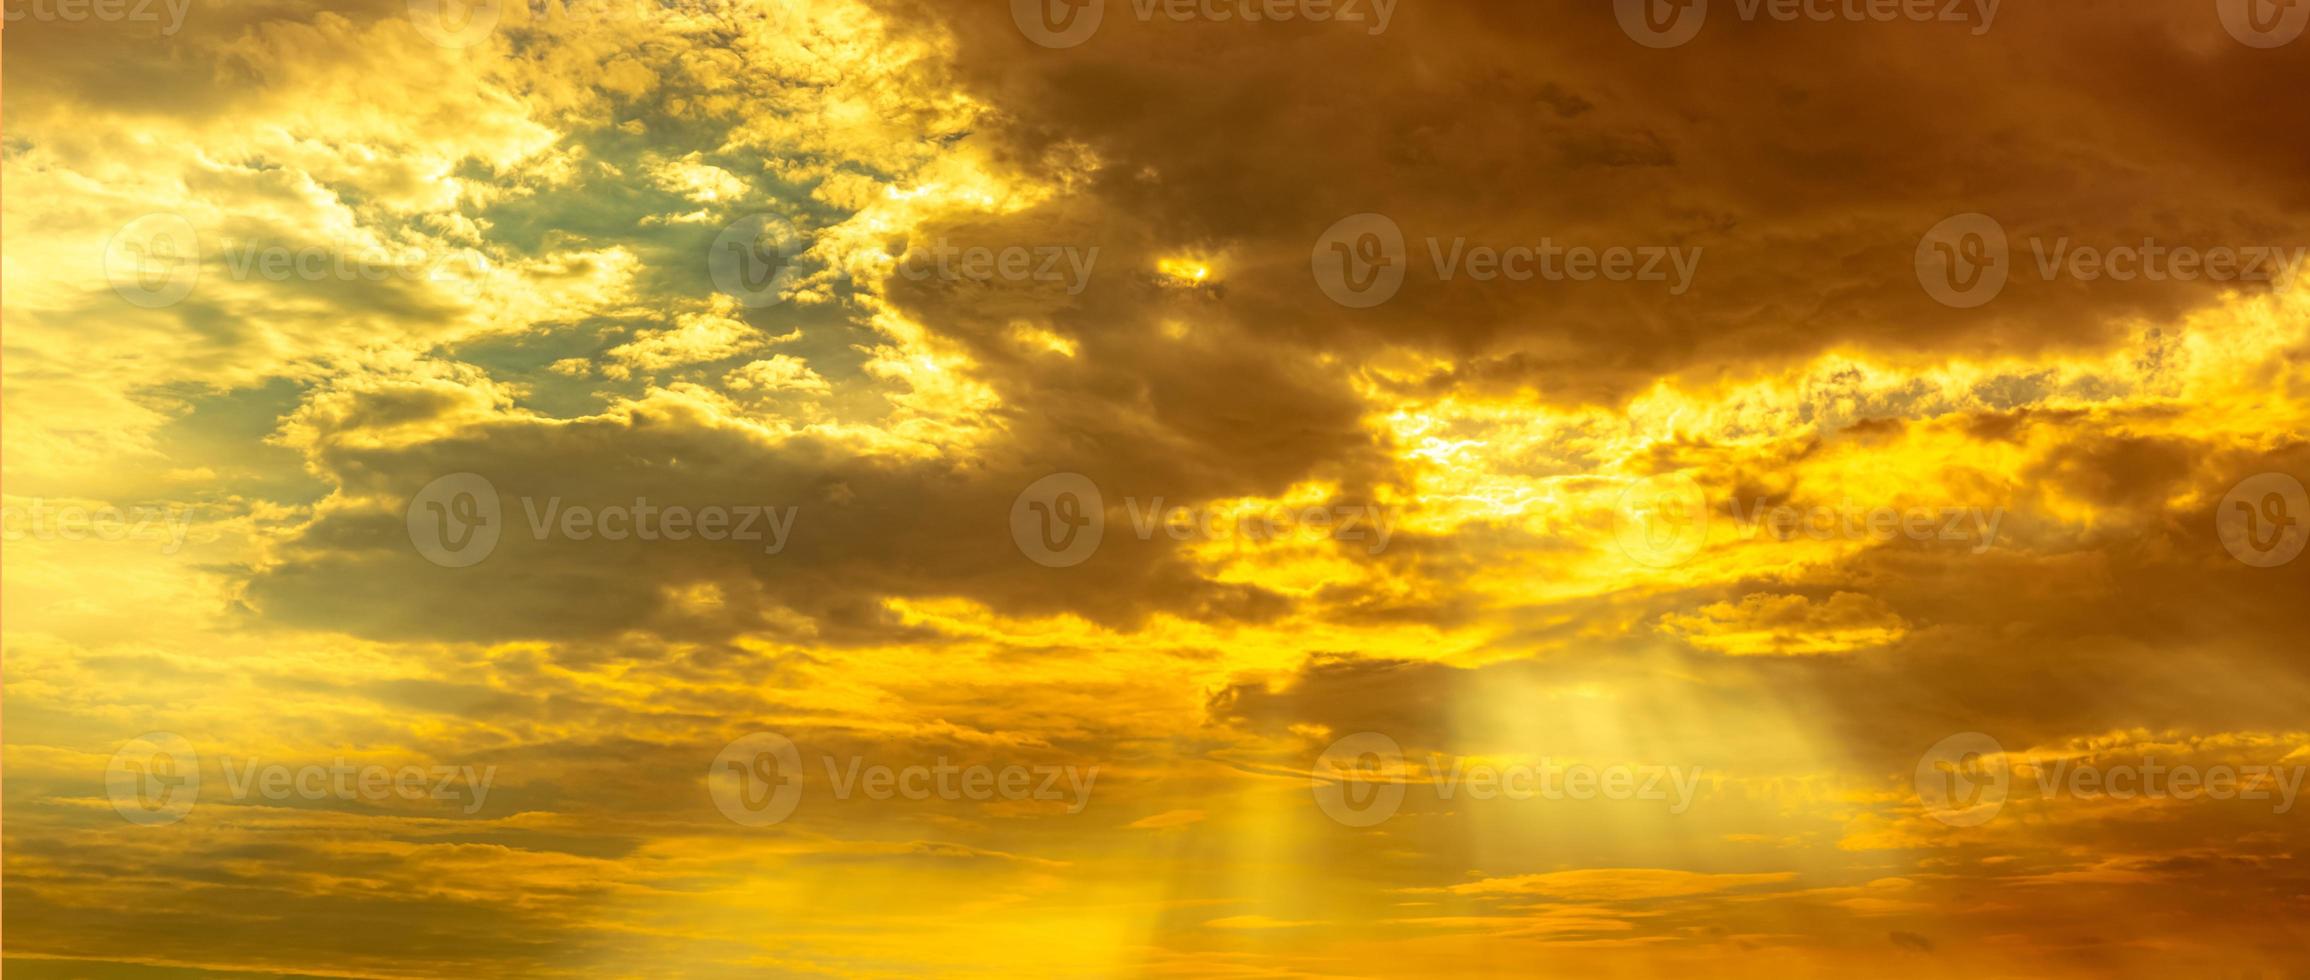 Gott Licht. Dramatischer goldener bewölkter Himmel mit Sonnenstrahl. gelbe Sonnenstrahlen durch goldene Wolken. gottlicht vom himmel für hoffnung und treues konzept. glaube an Gott. schöner sonnenlichthimmelhintergrund. foto